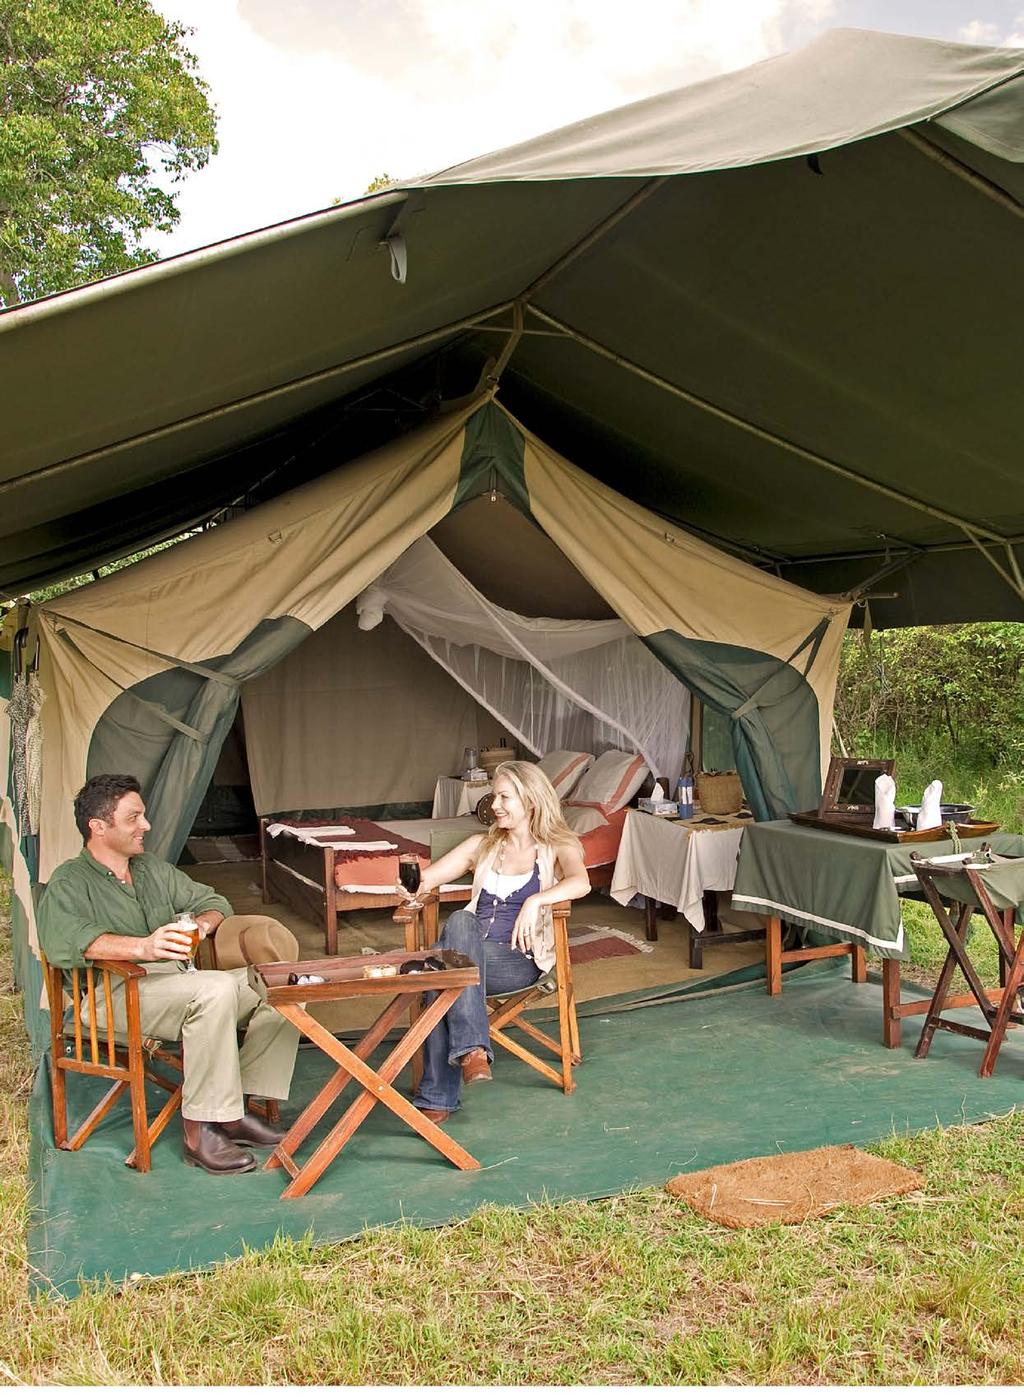 SANCTUARY RETREATS PRIVATE CAMPING VARIOUS LOCATIONS IN KENYA KENYA SAFARI TENTS Sanctuary Retreats Private Camping is the ultimate and most